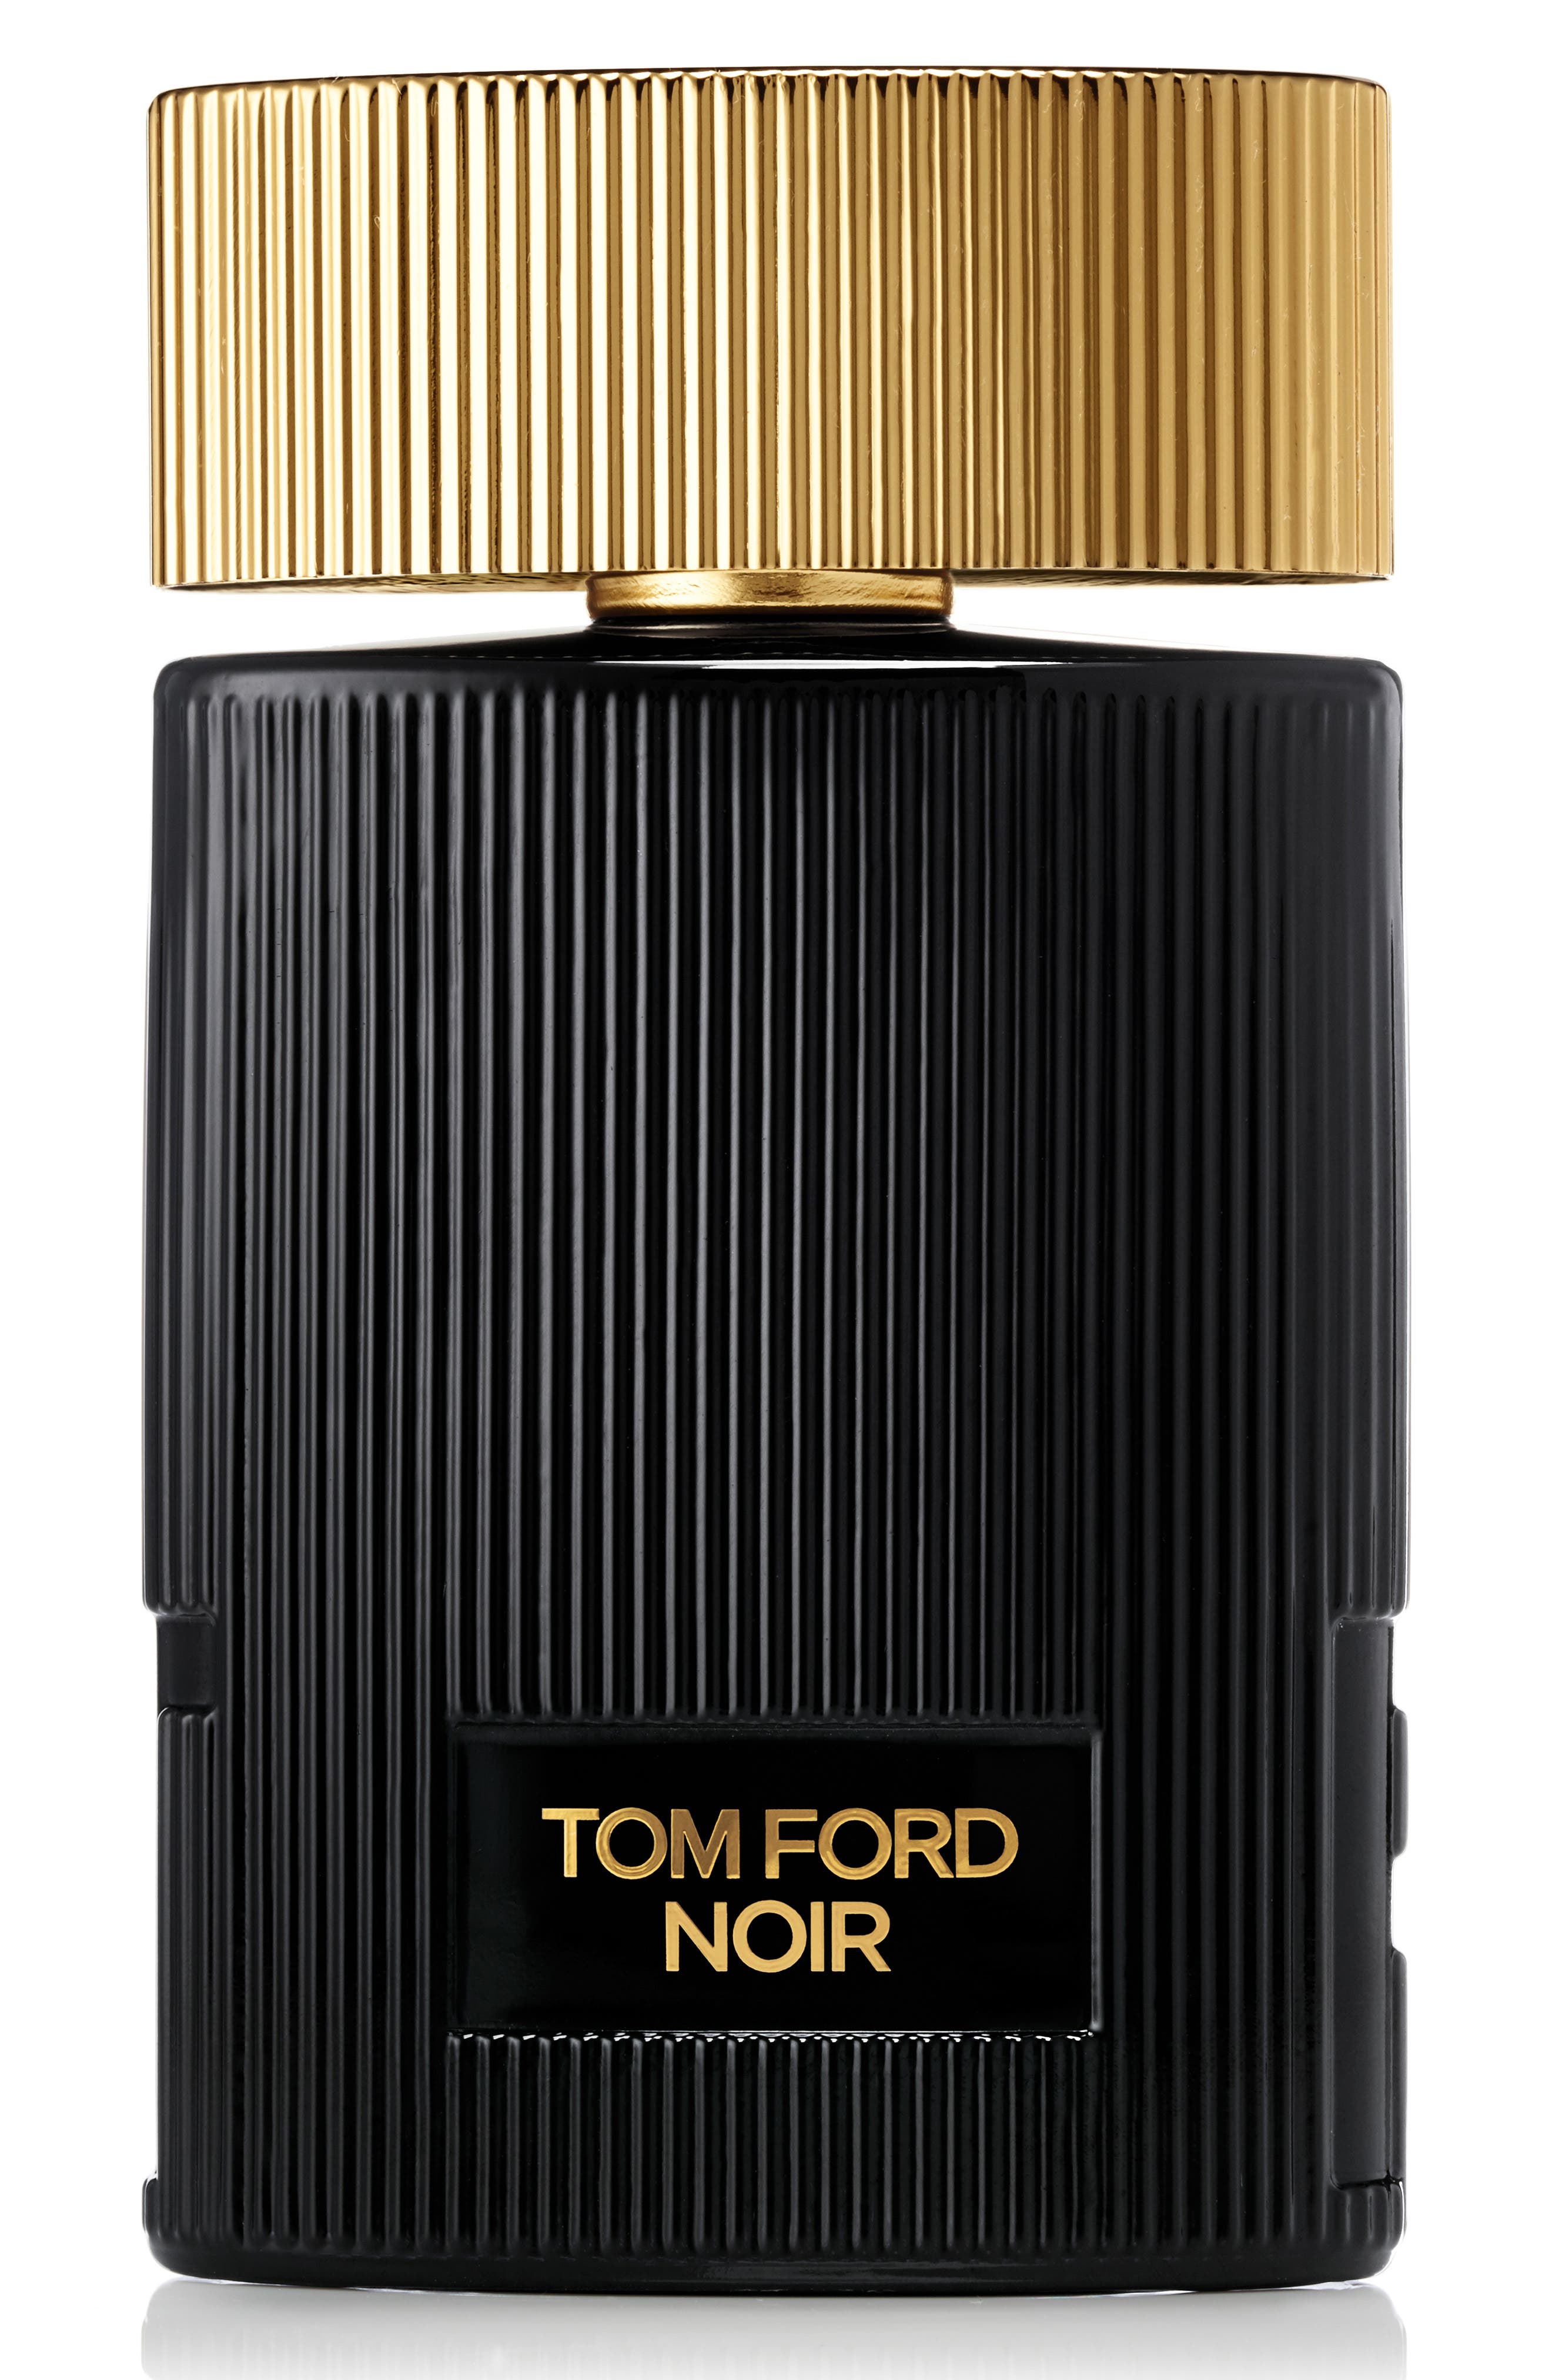 UPC 888066034623 - Tom Ford Noir Pour Femme Eau de Parfum, Size 1.7 Oz ...